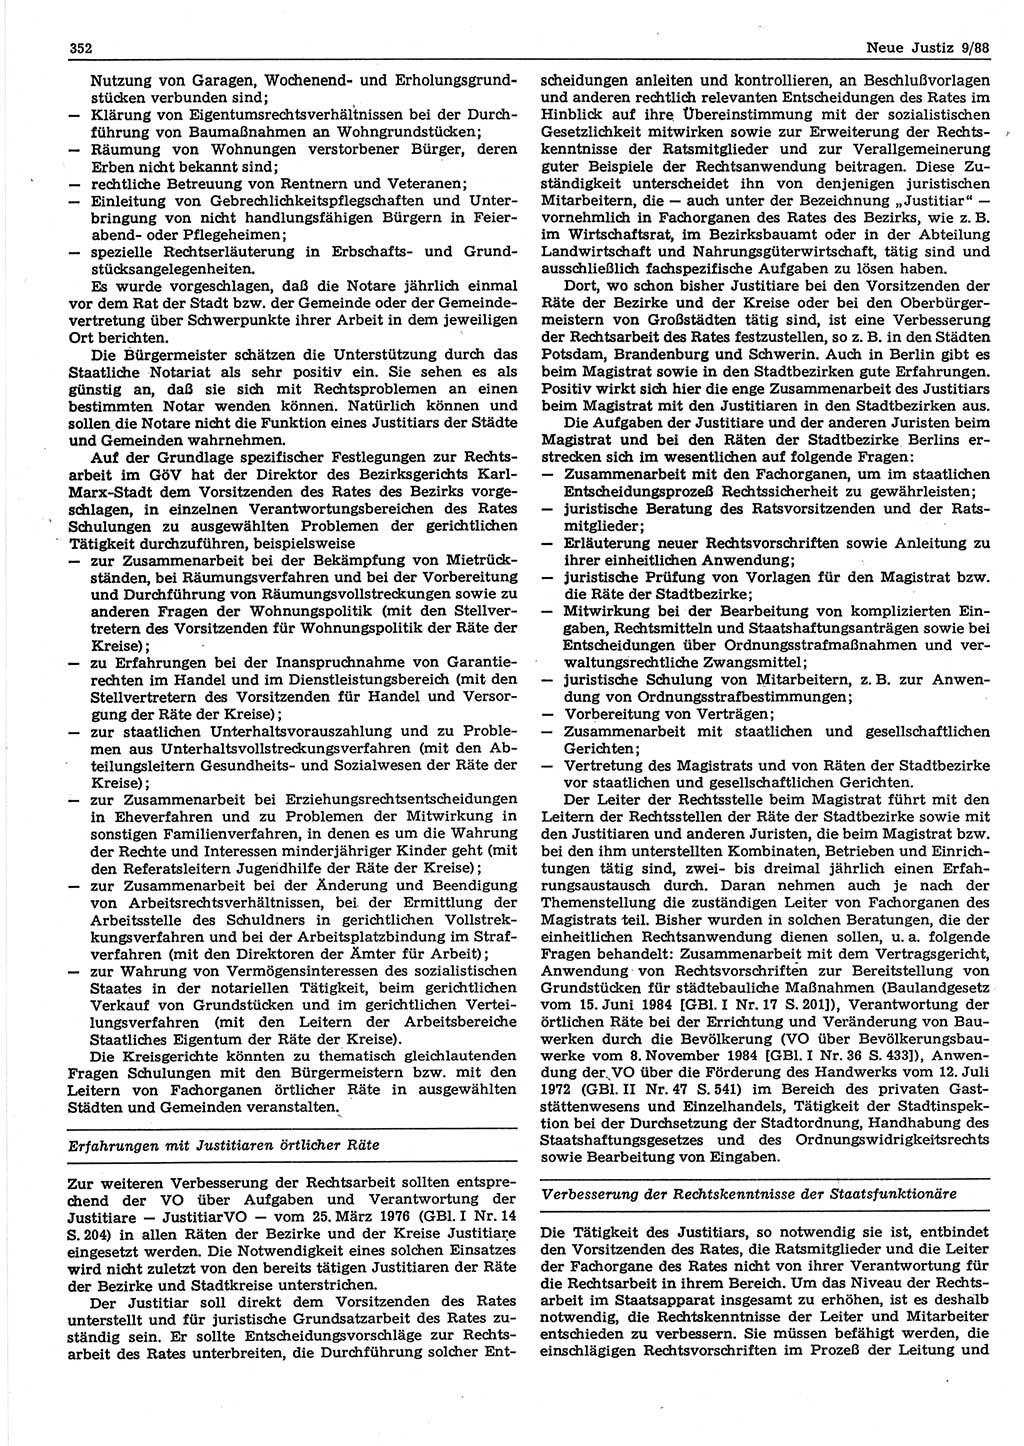 Neue Justiz (NJ), Zeitschrift für sozialistisches Recht und Gesetzlichkeit [Deutsche Demokratische Republik (DDR)], 42. Jahrgang 1988, Seite 352 (NJ DDR 1988, S. 352)